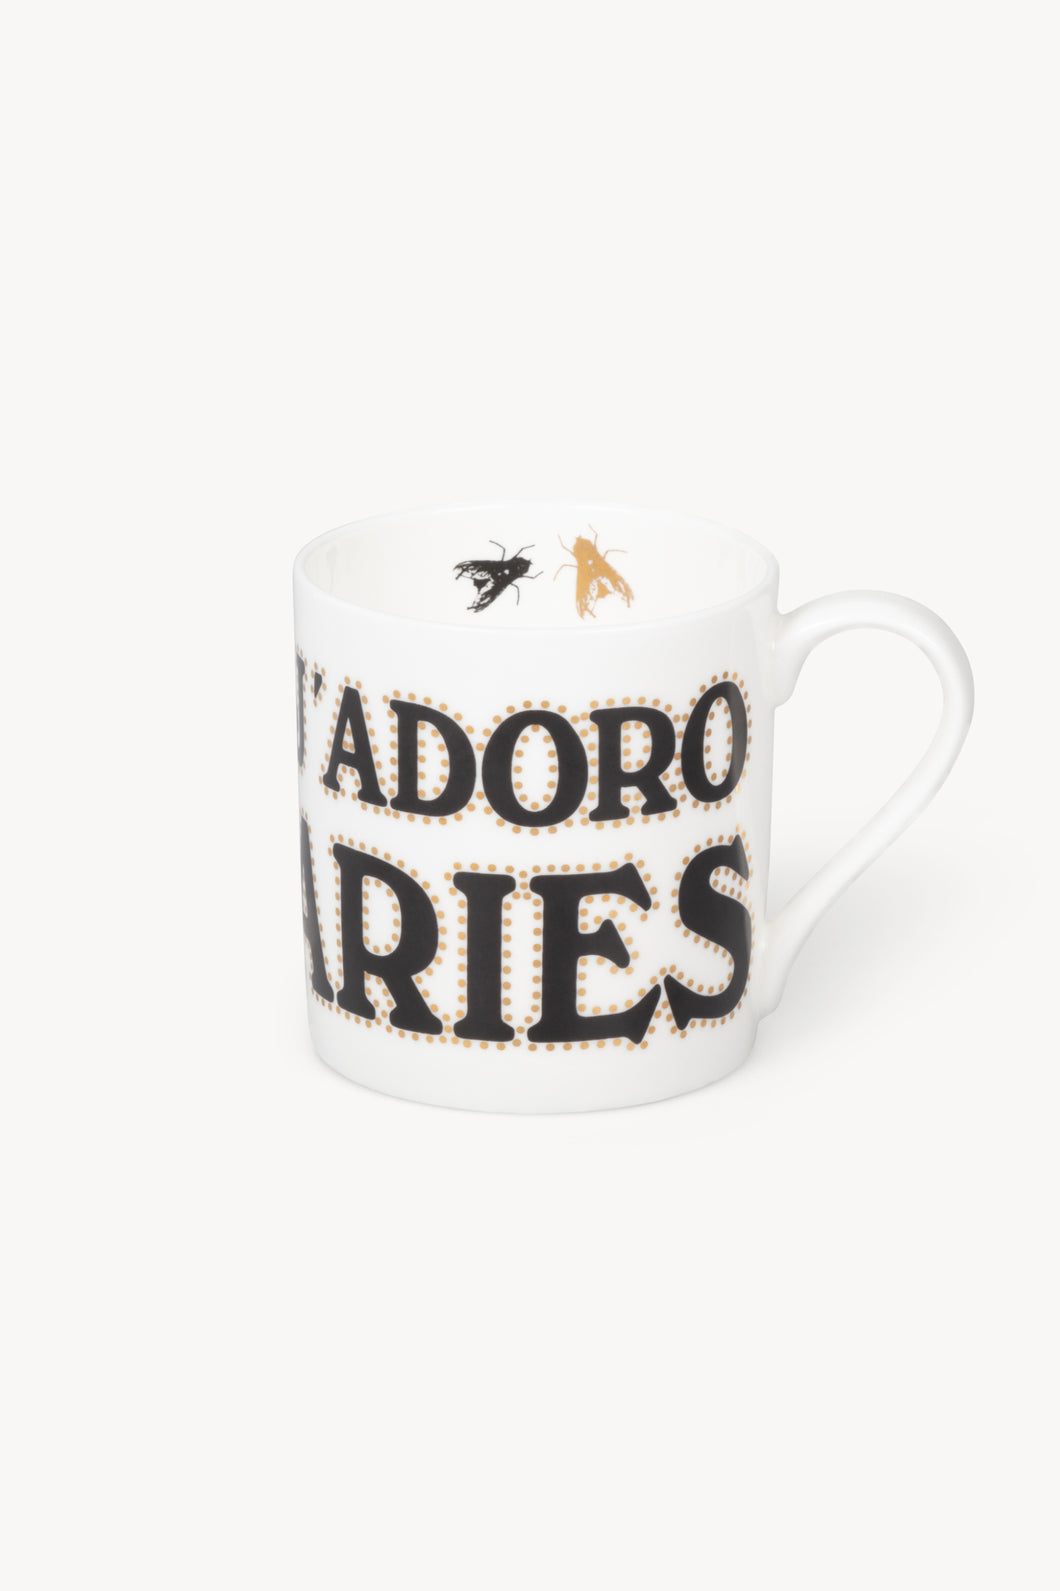 J'adoro Aries Mug